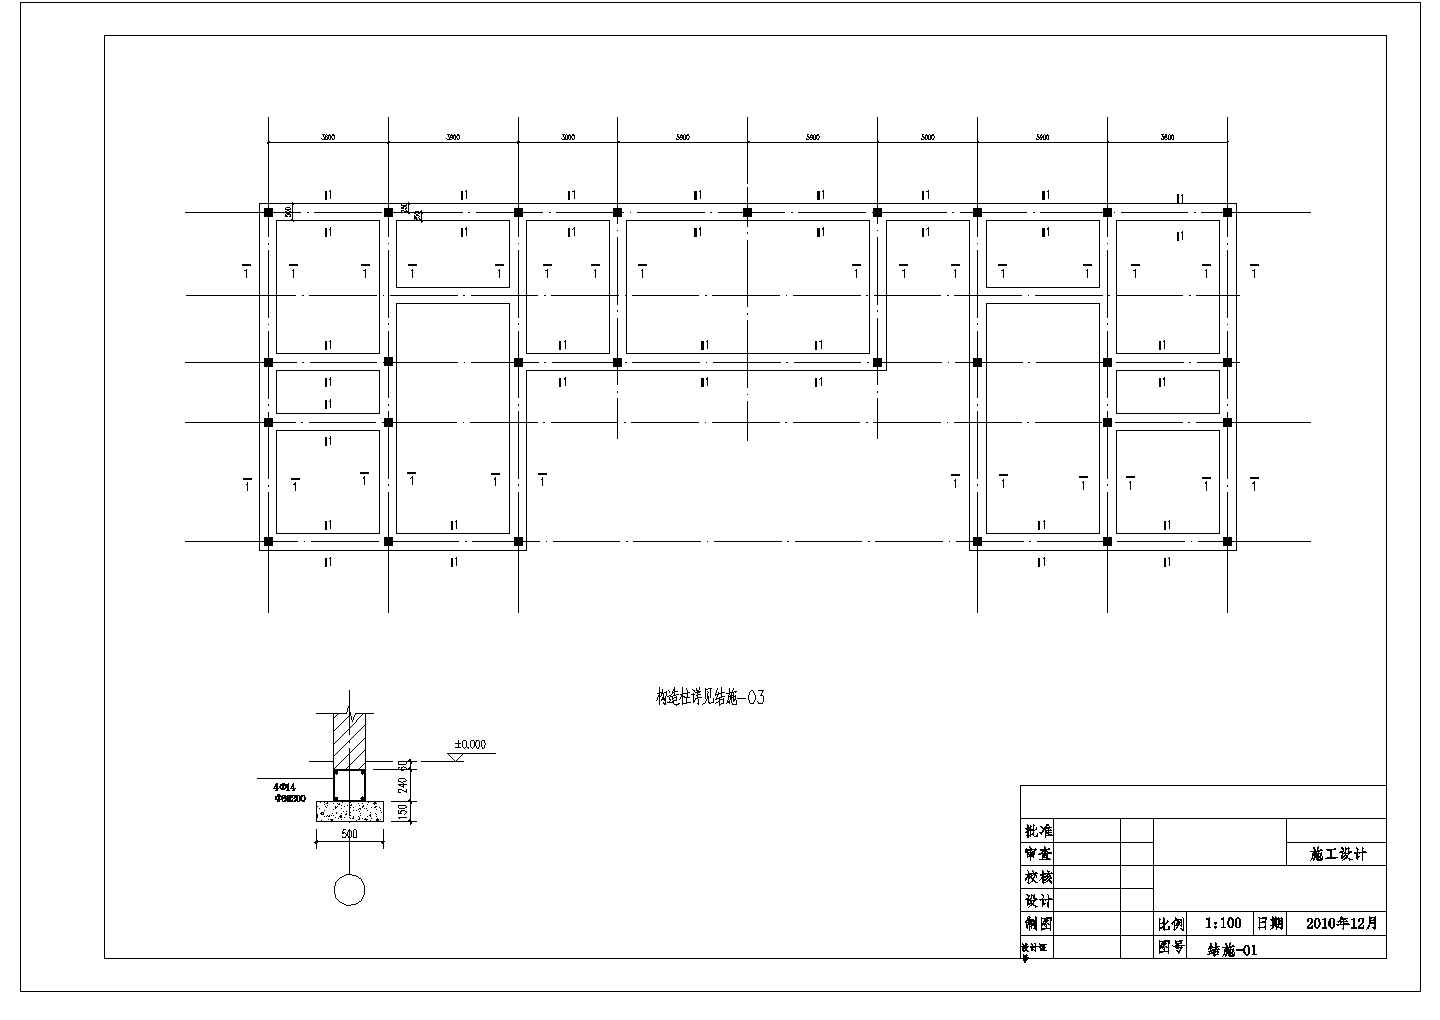 川北民居风格某供水工程管理房建筑设计方案图